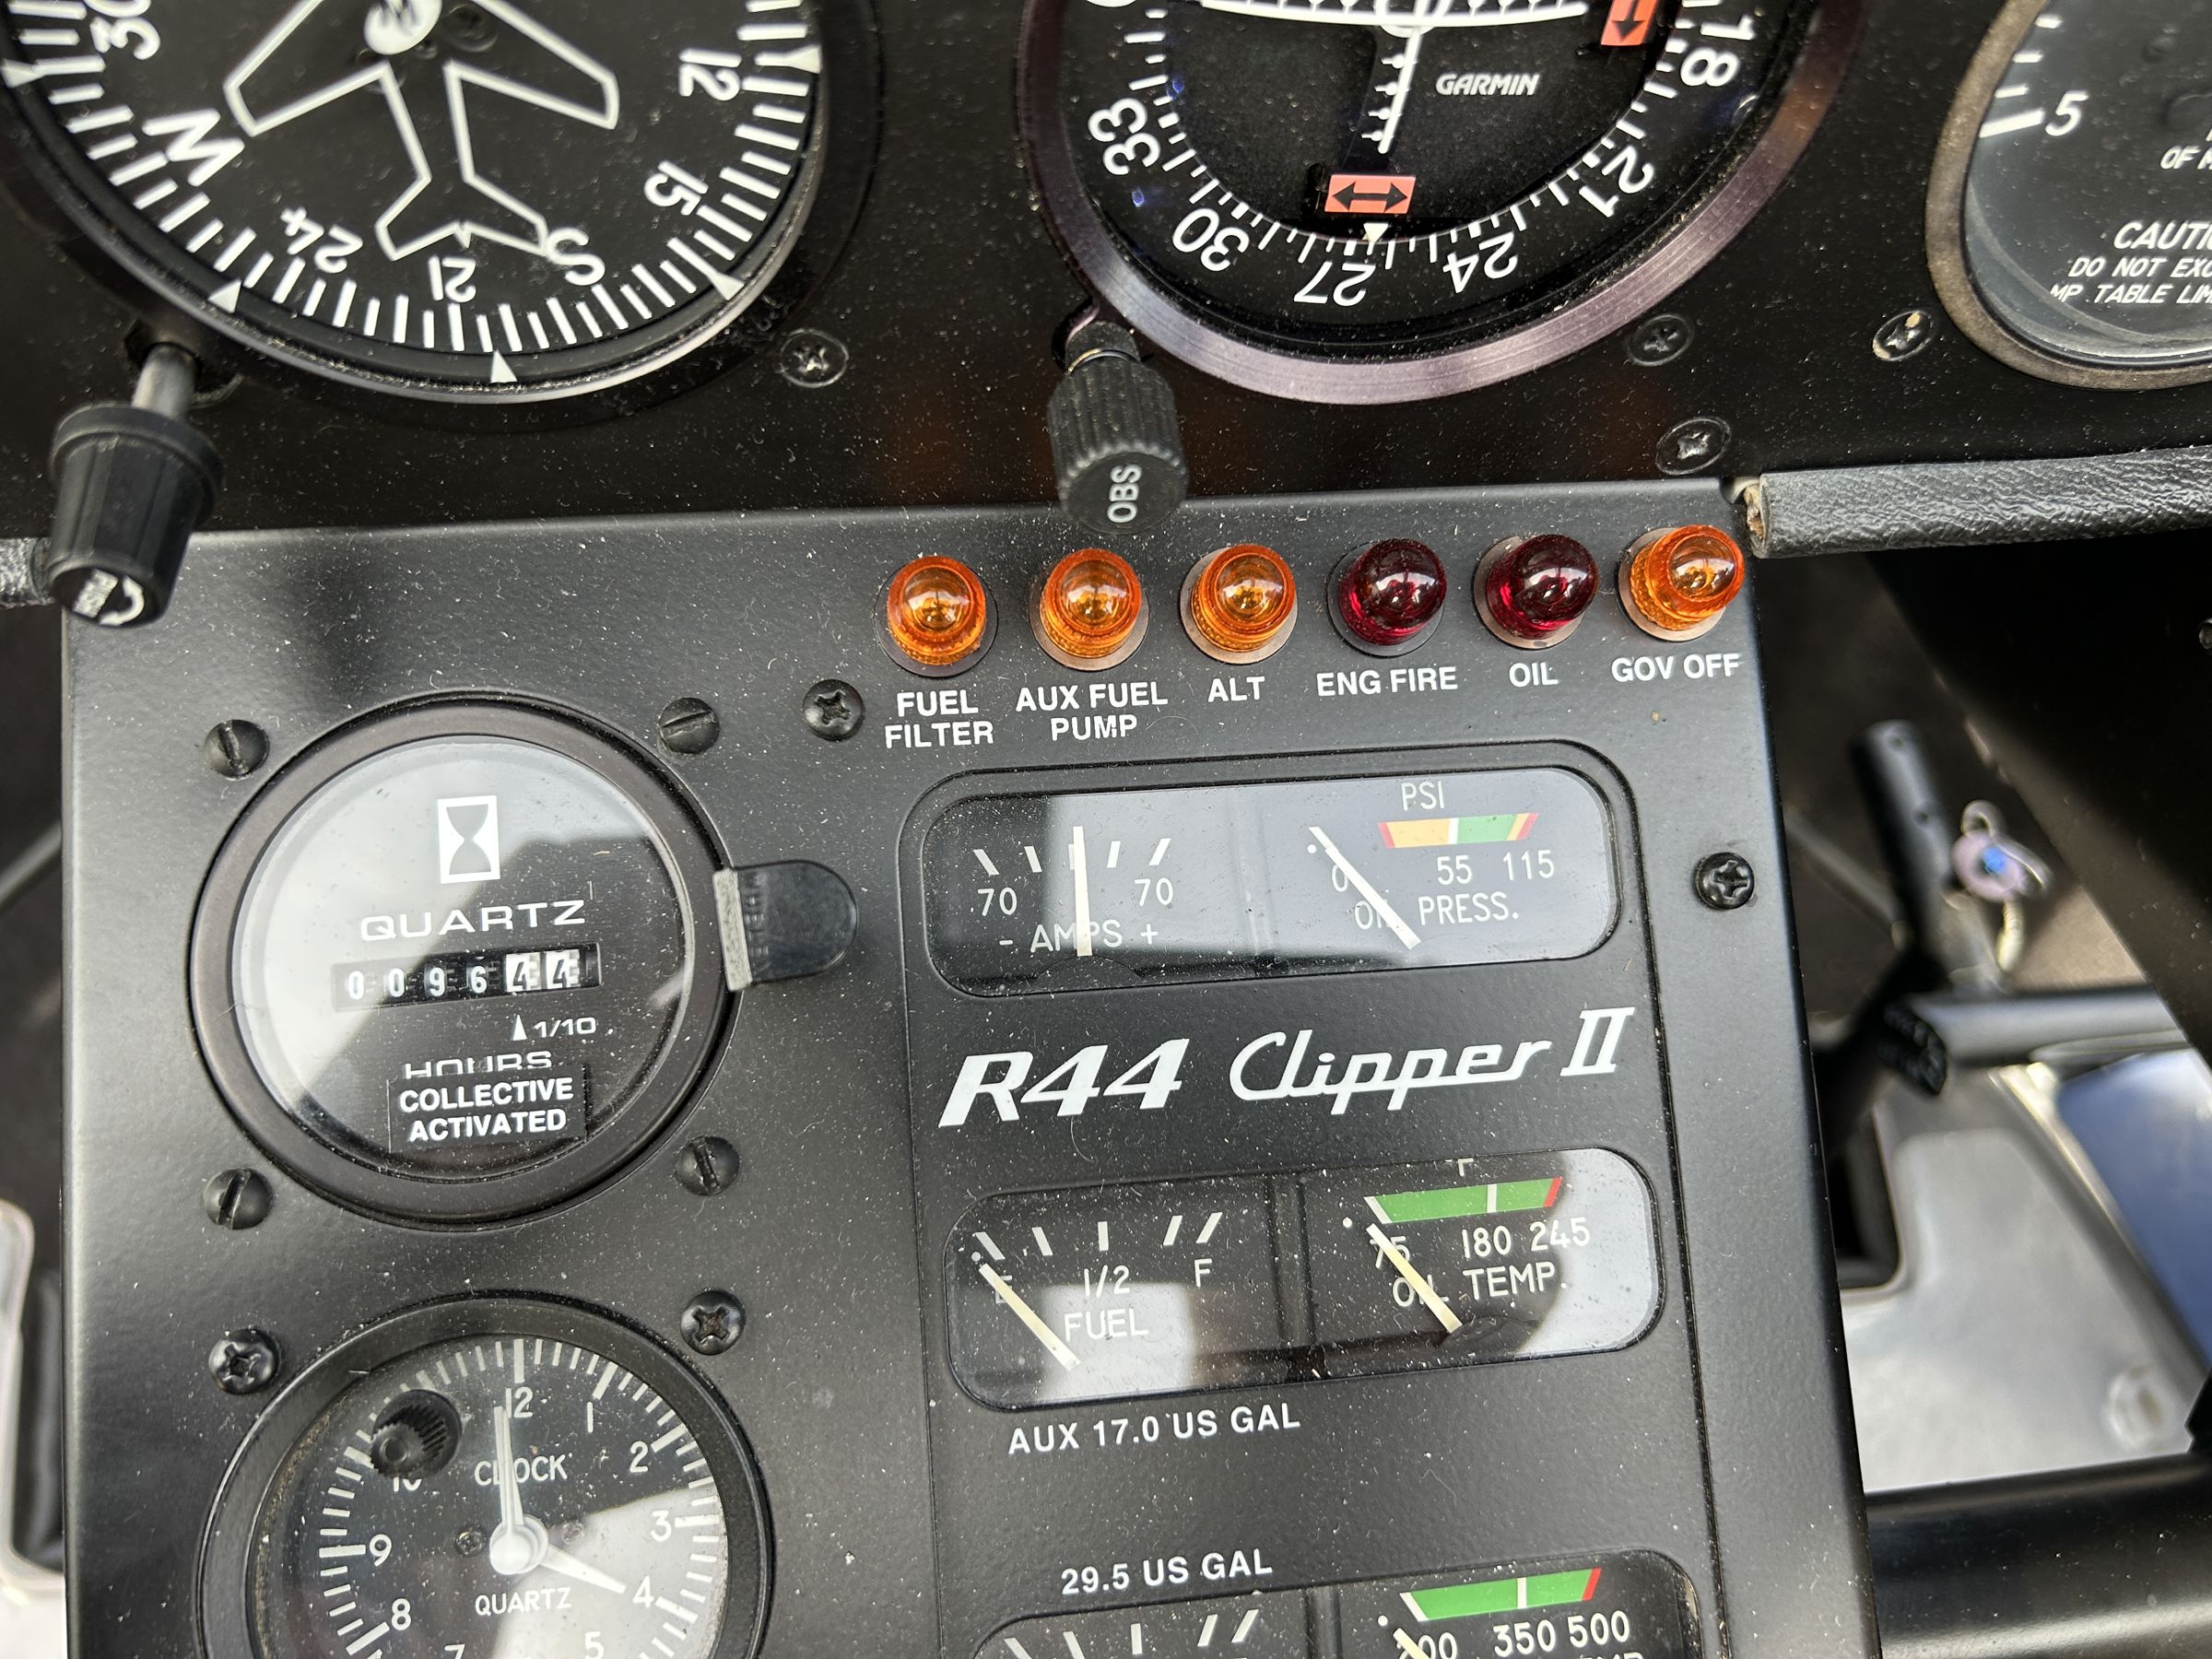 2010 Robinson R44 Clipper II - Interior